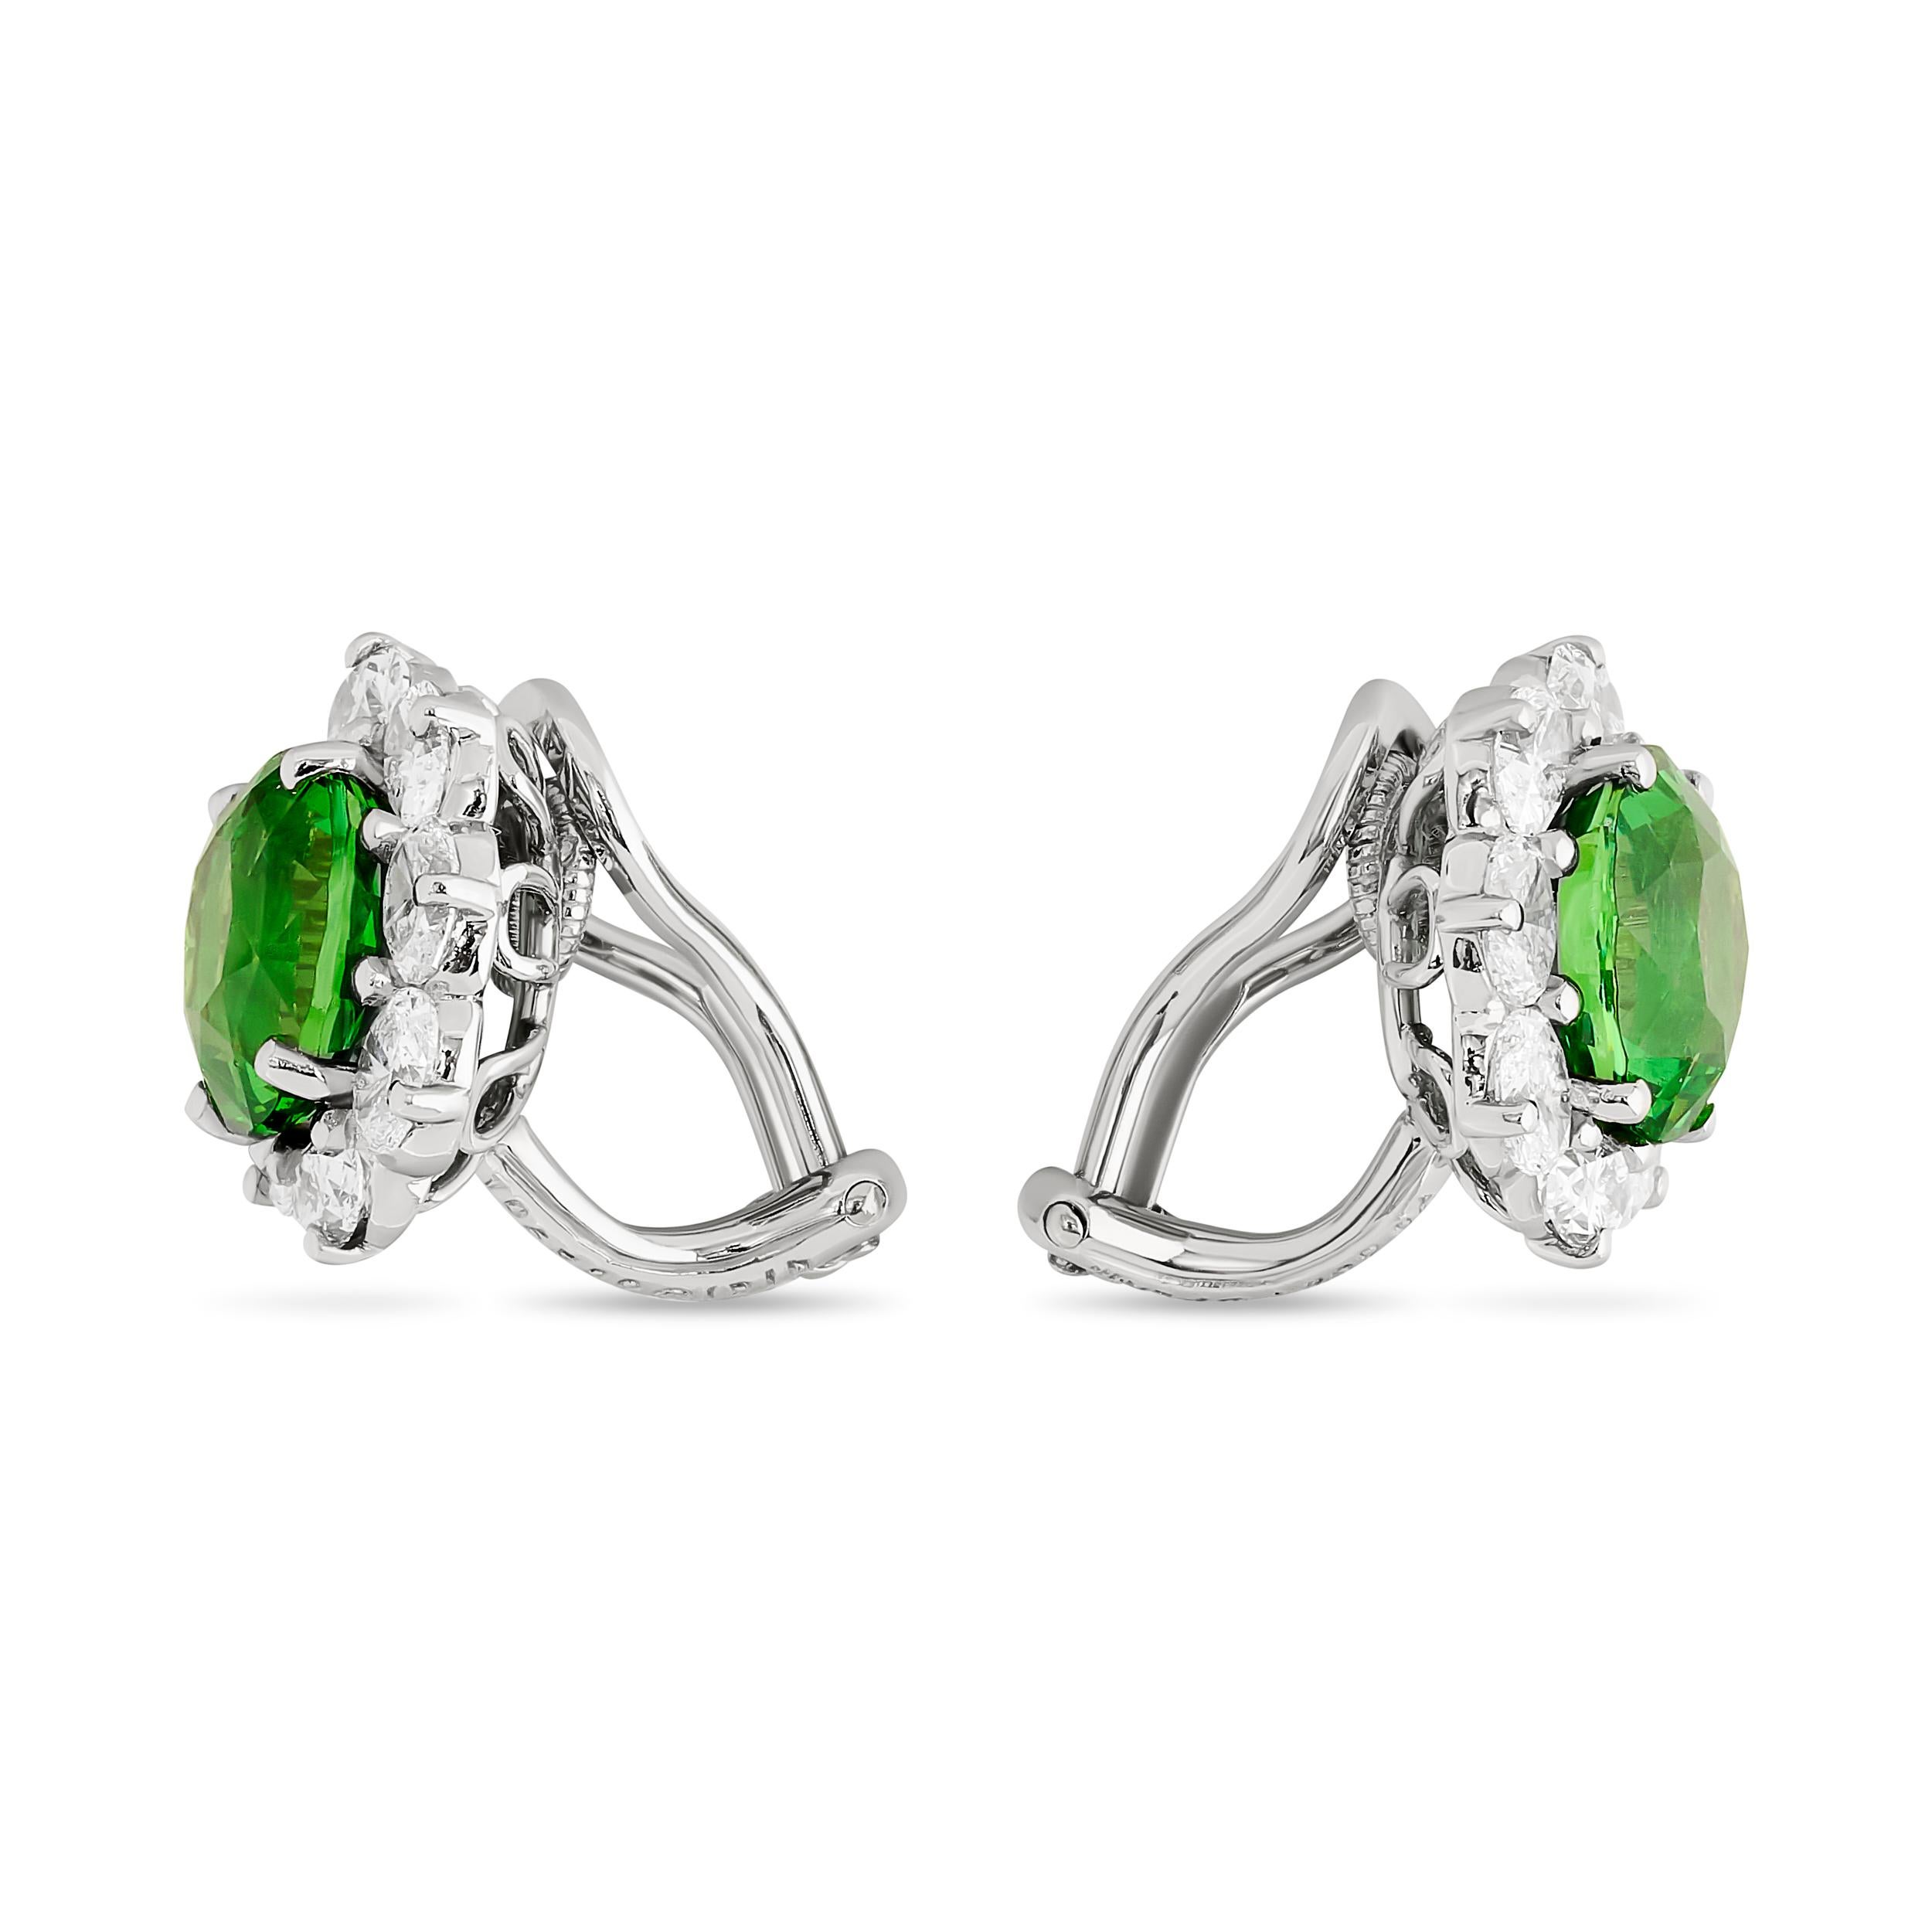 Schmücken Sie sich mit diesen Oscar Heyman Ohrringen mit grünem Tsavorit-Granat und Diamanten in üppiger Schönheit.

Diese Ohrringe bestehen aus zwei ovalen grünen Tsavorit-Granaten mit einem Gewicht von etwa 6,15 Karat. Außerdem gibt es 16 ovale